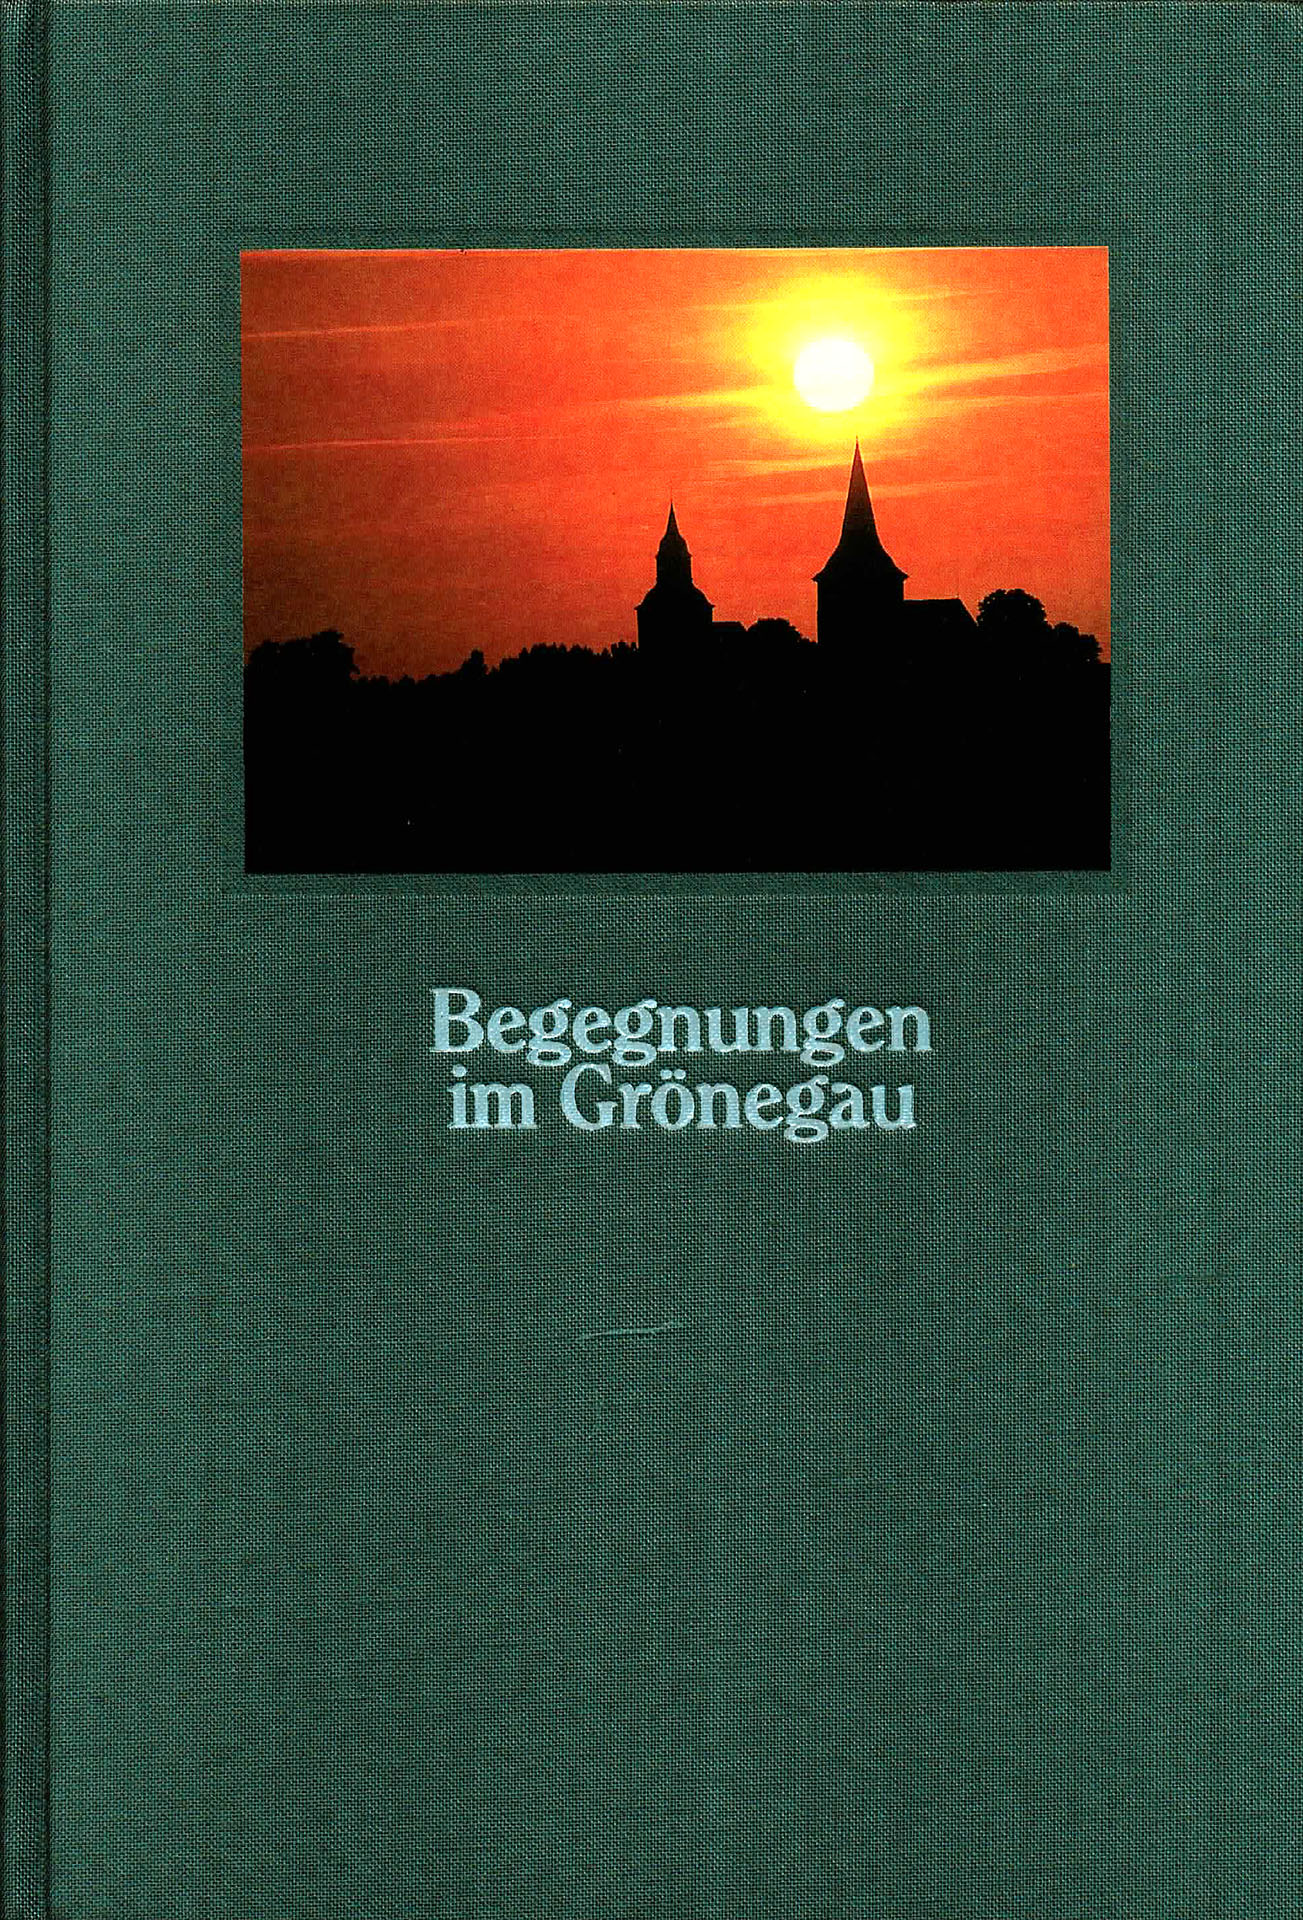 Begegnungen im Grönegau - Otte, Maria / Mittelstädt, Fritz - Gerd / Nagel, Werner